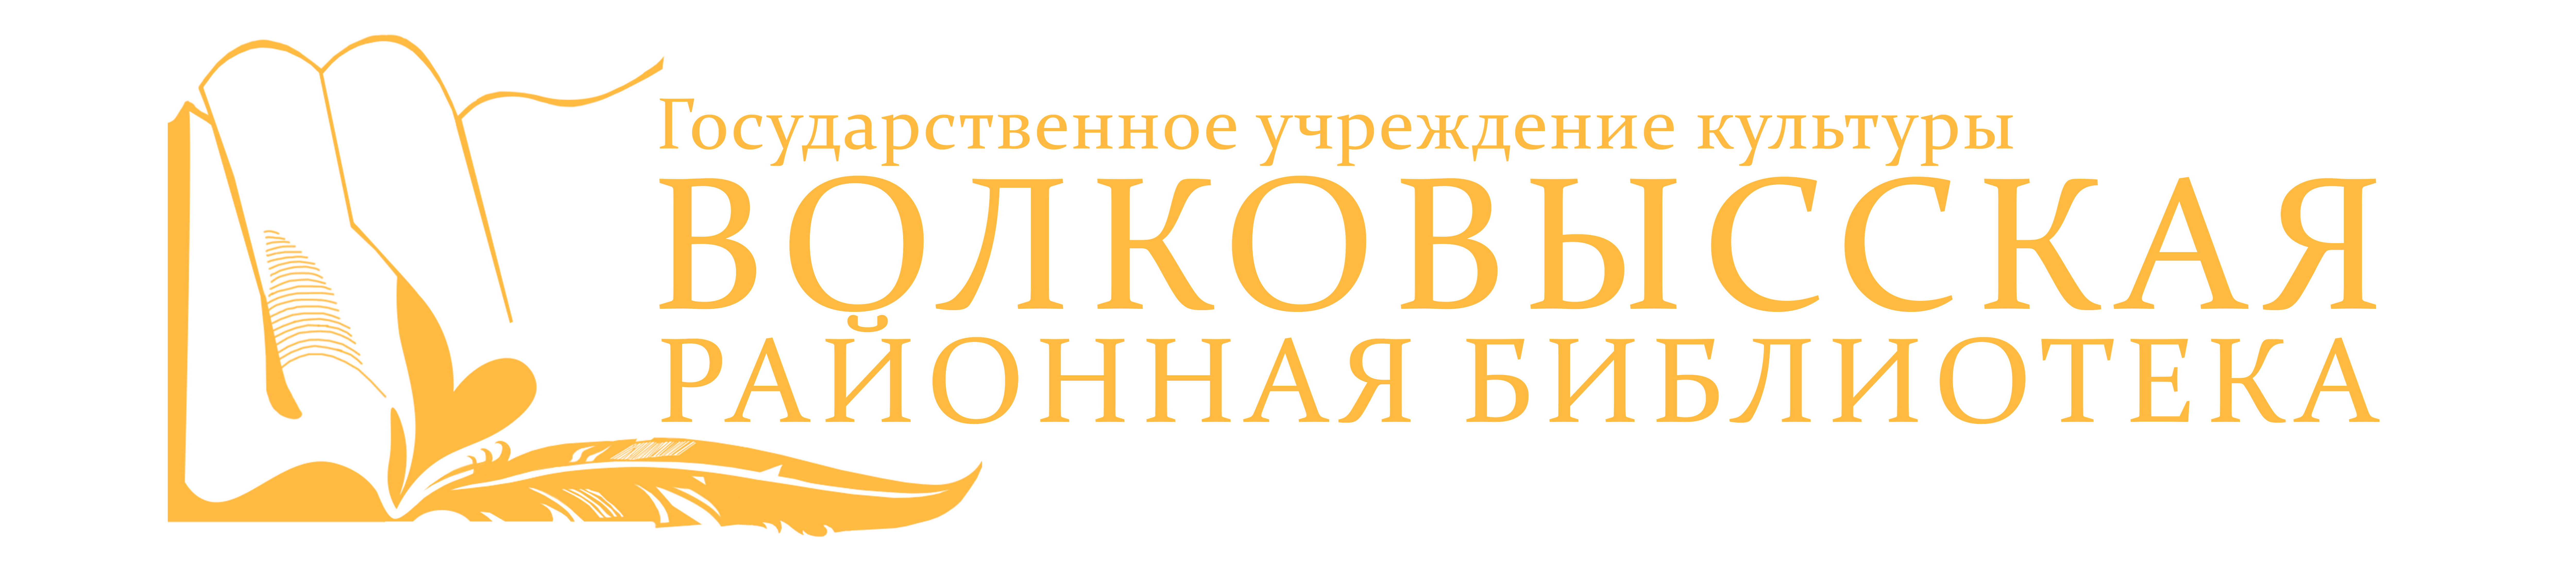 ГУК "Волковысская районная библиотека